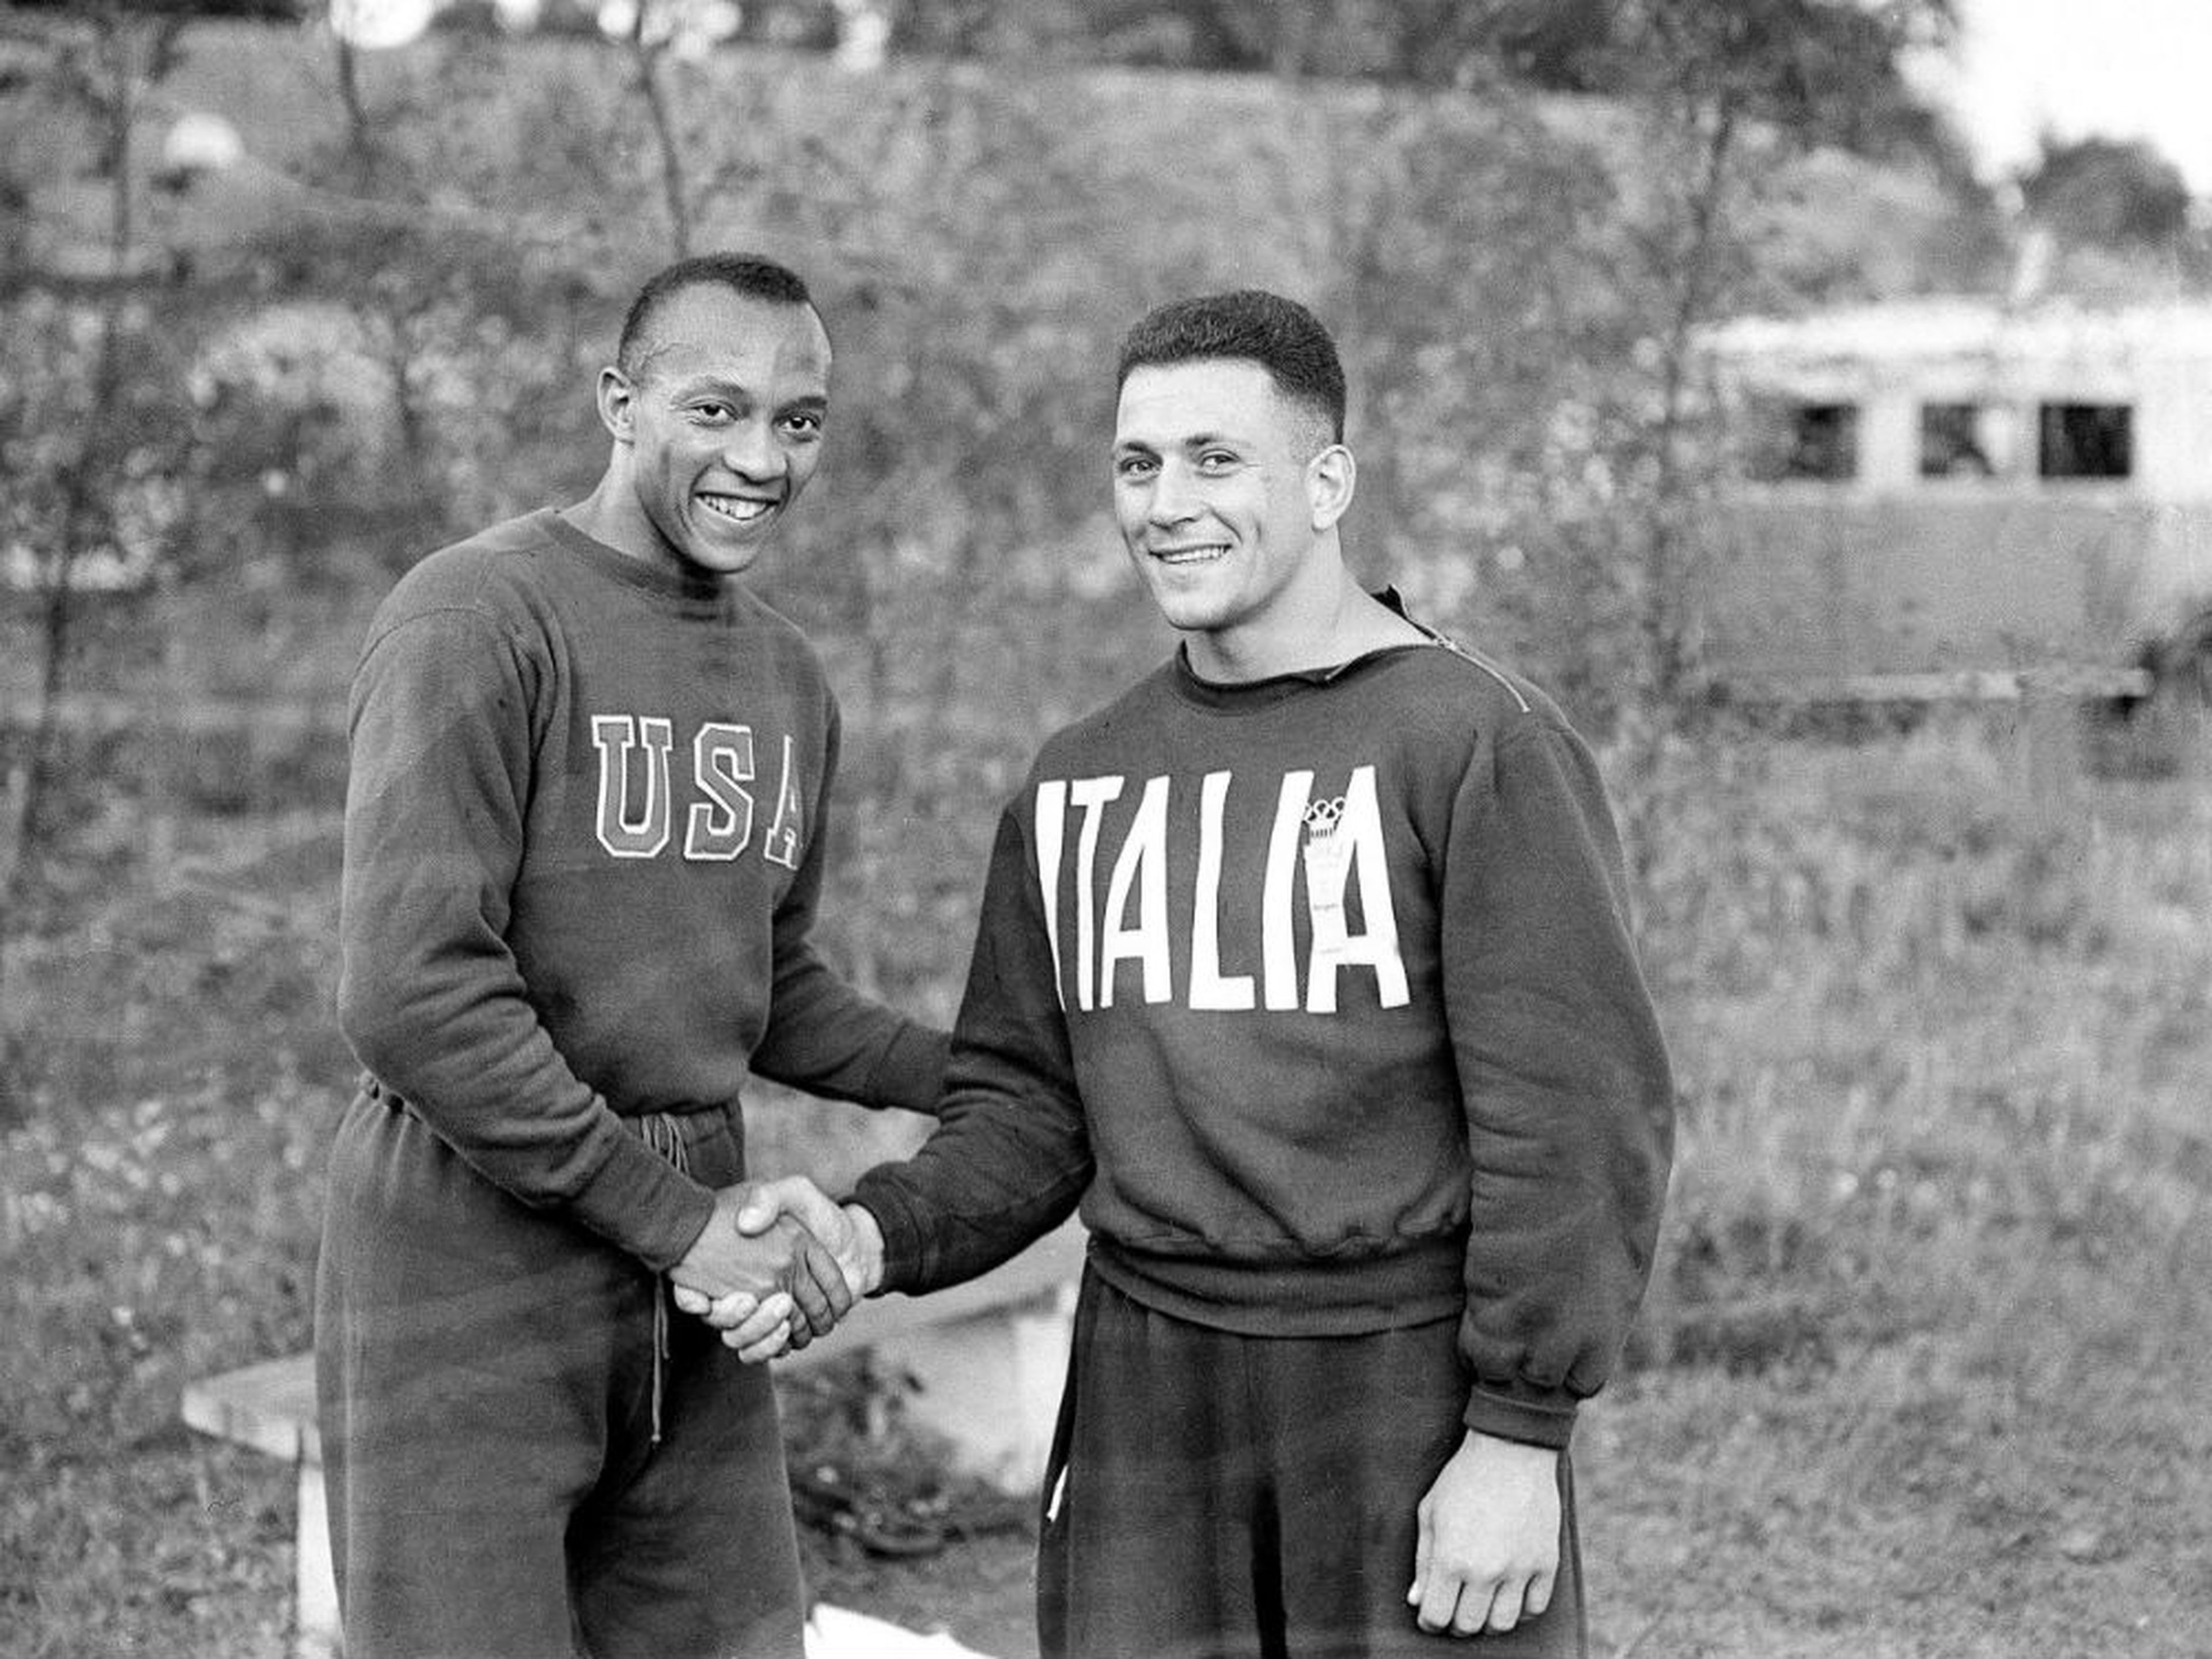 El atleta estadounidense Jesse Owens (izqd.) da la mano a su rival italiano Ercola Gallegati en la Villa Olímpica de Berlín 1936.